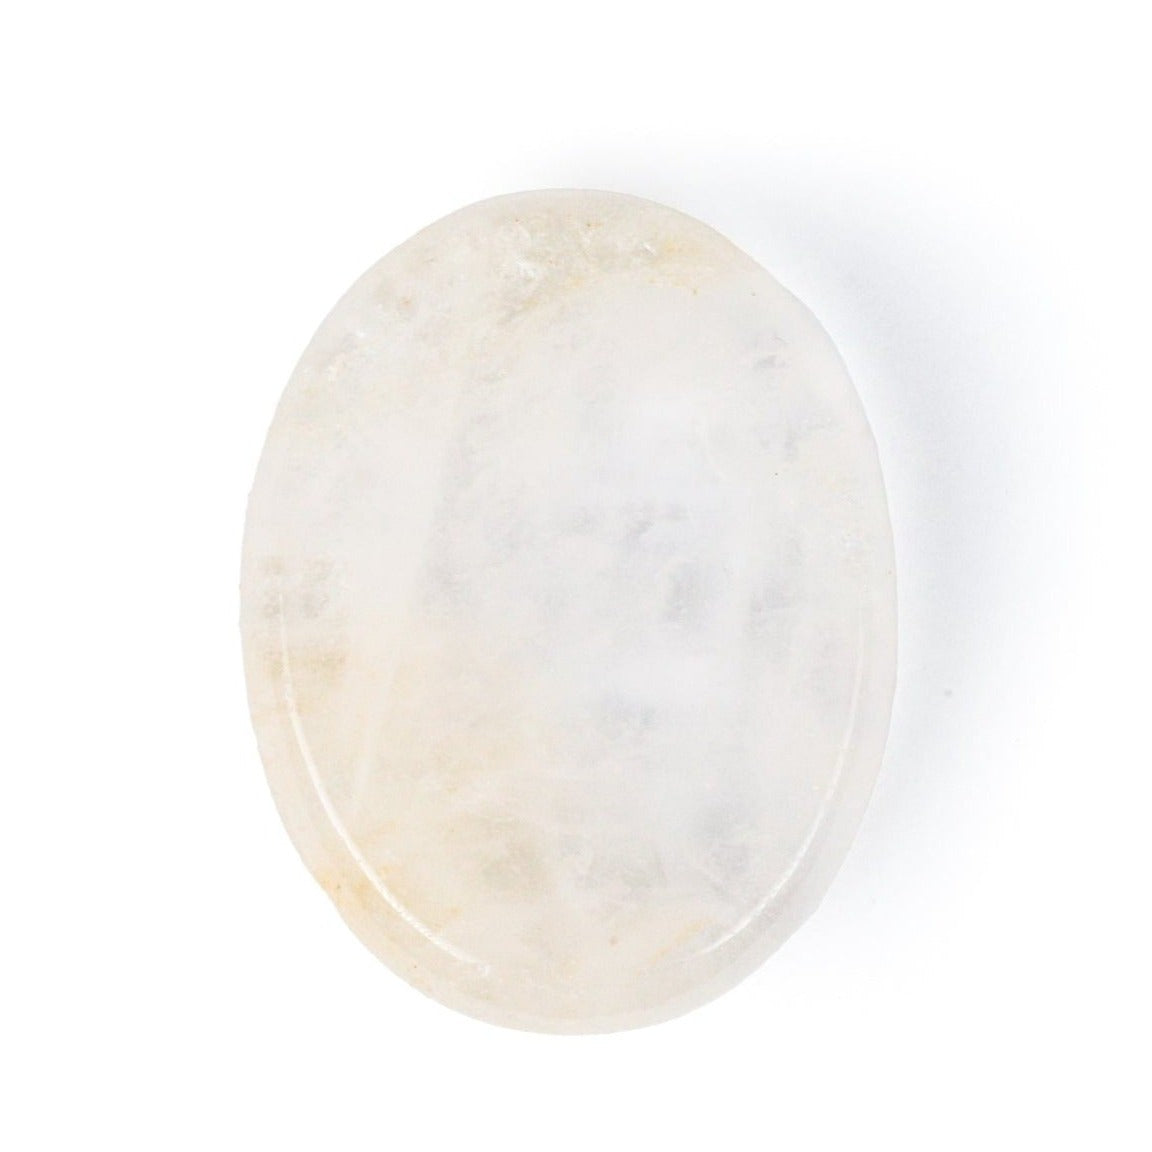 Comfort Stone - Clear quartz